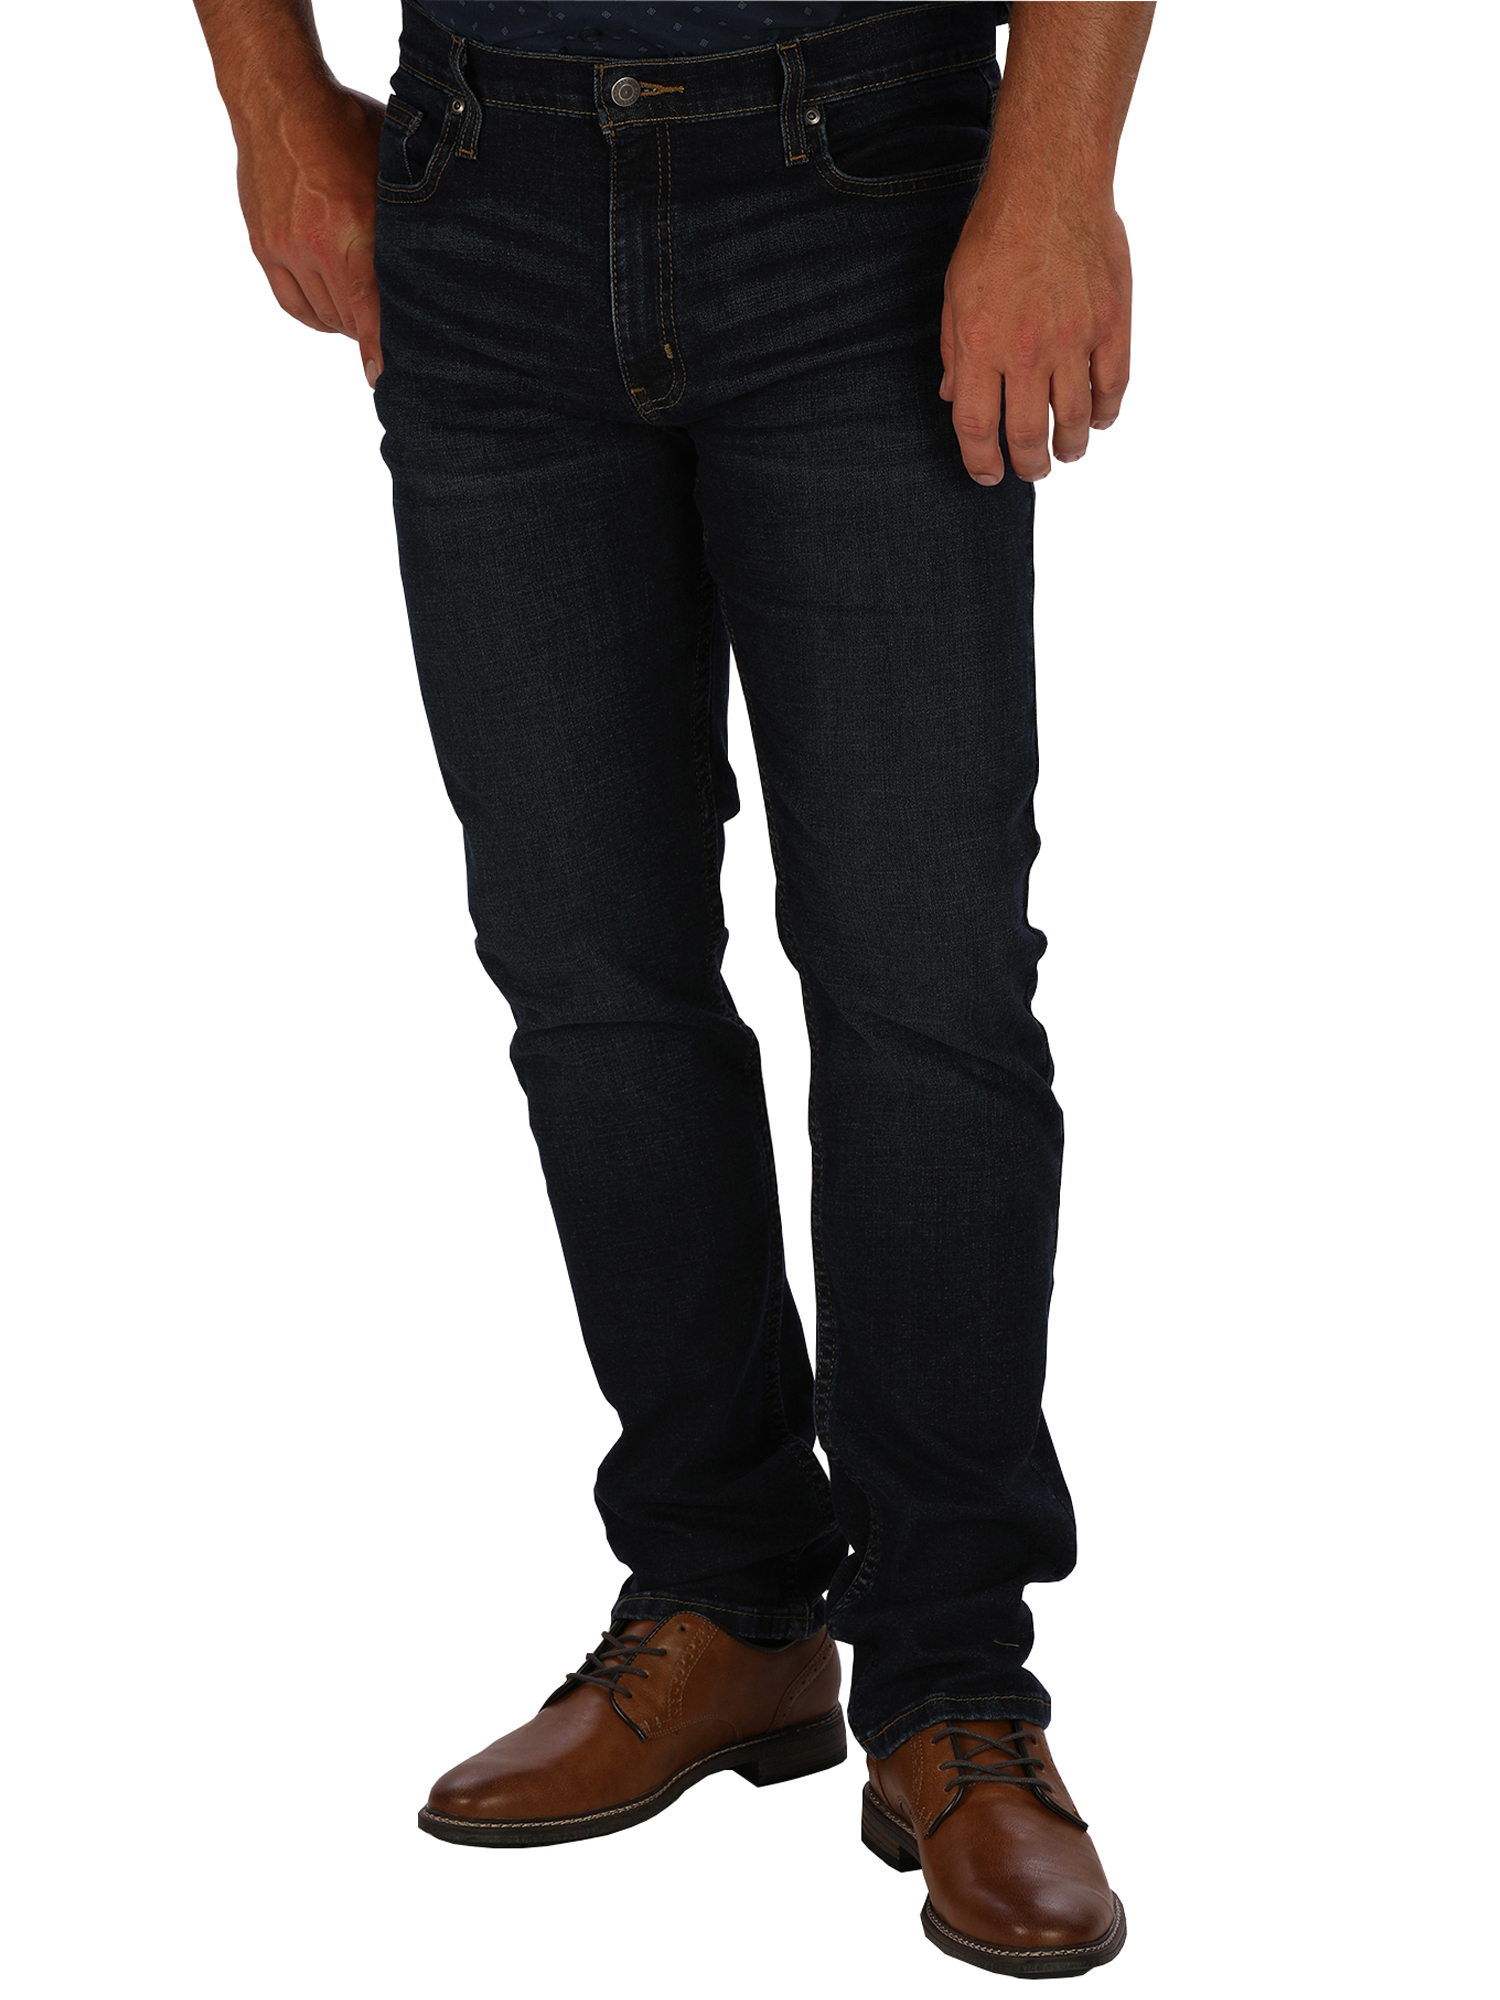 George Men's Slim Fit Jeans - image 1 of 5